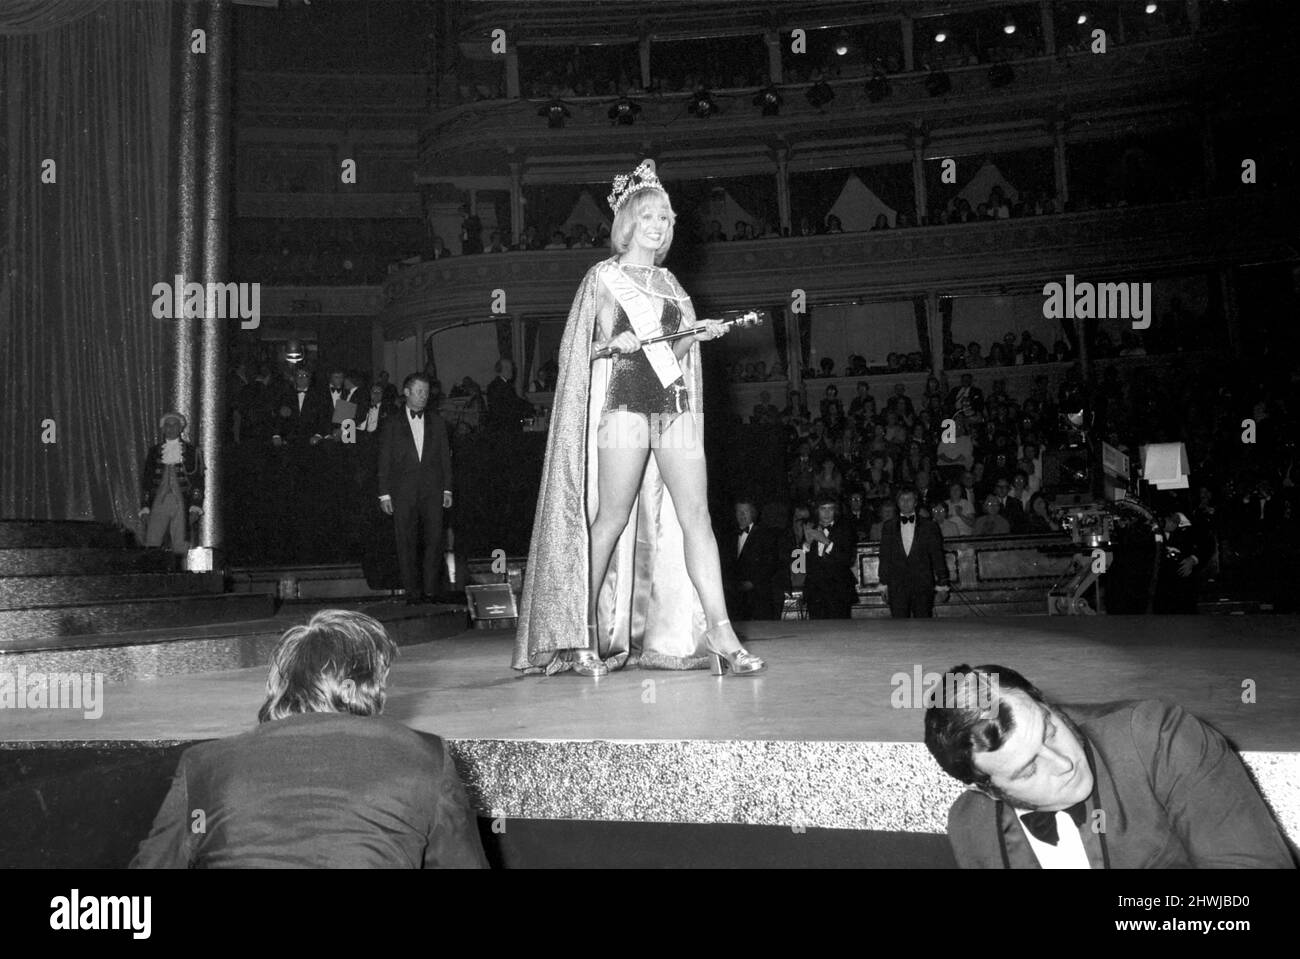 The winner Miss Australia. December 1972 72-11295-004 Stock Photo